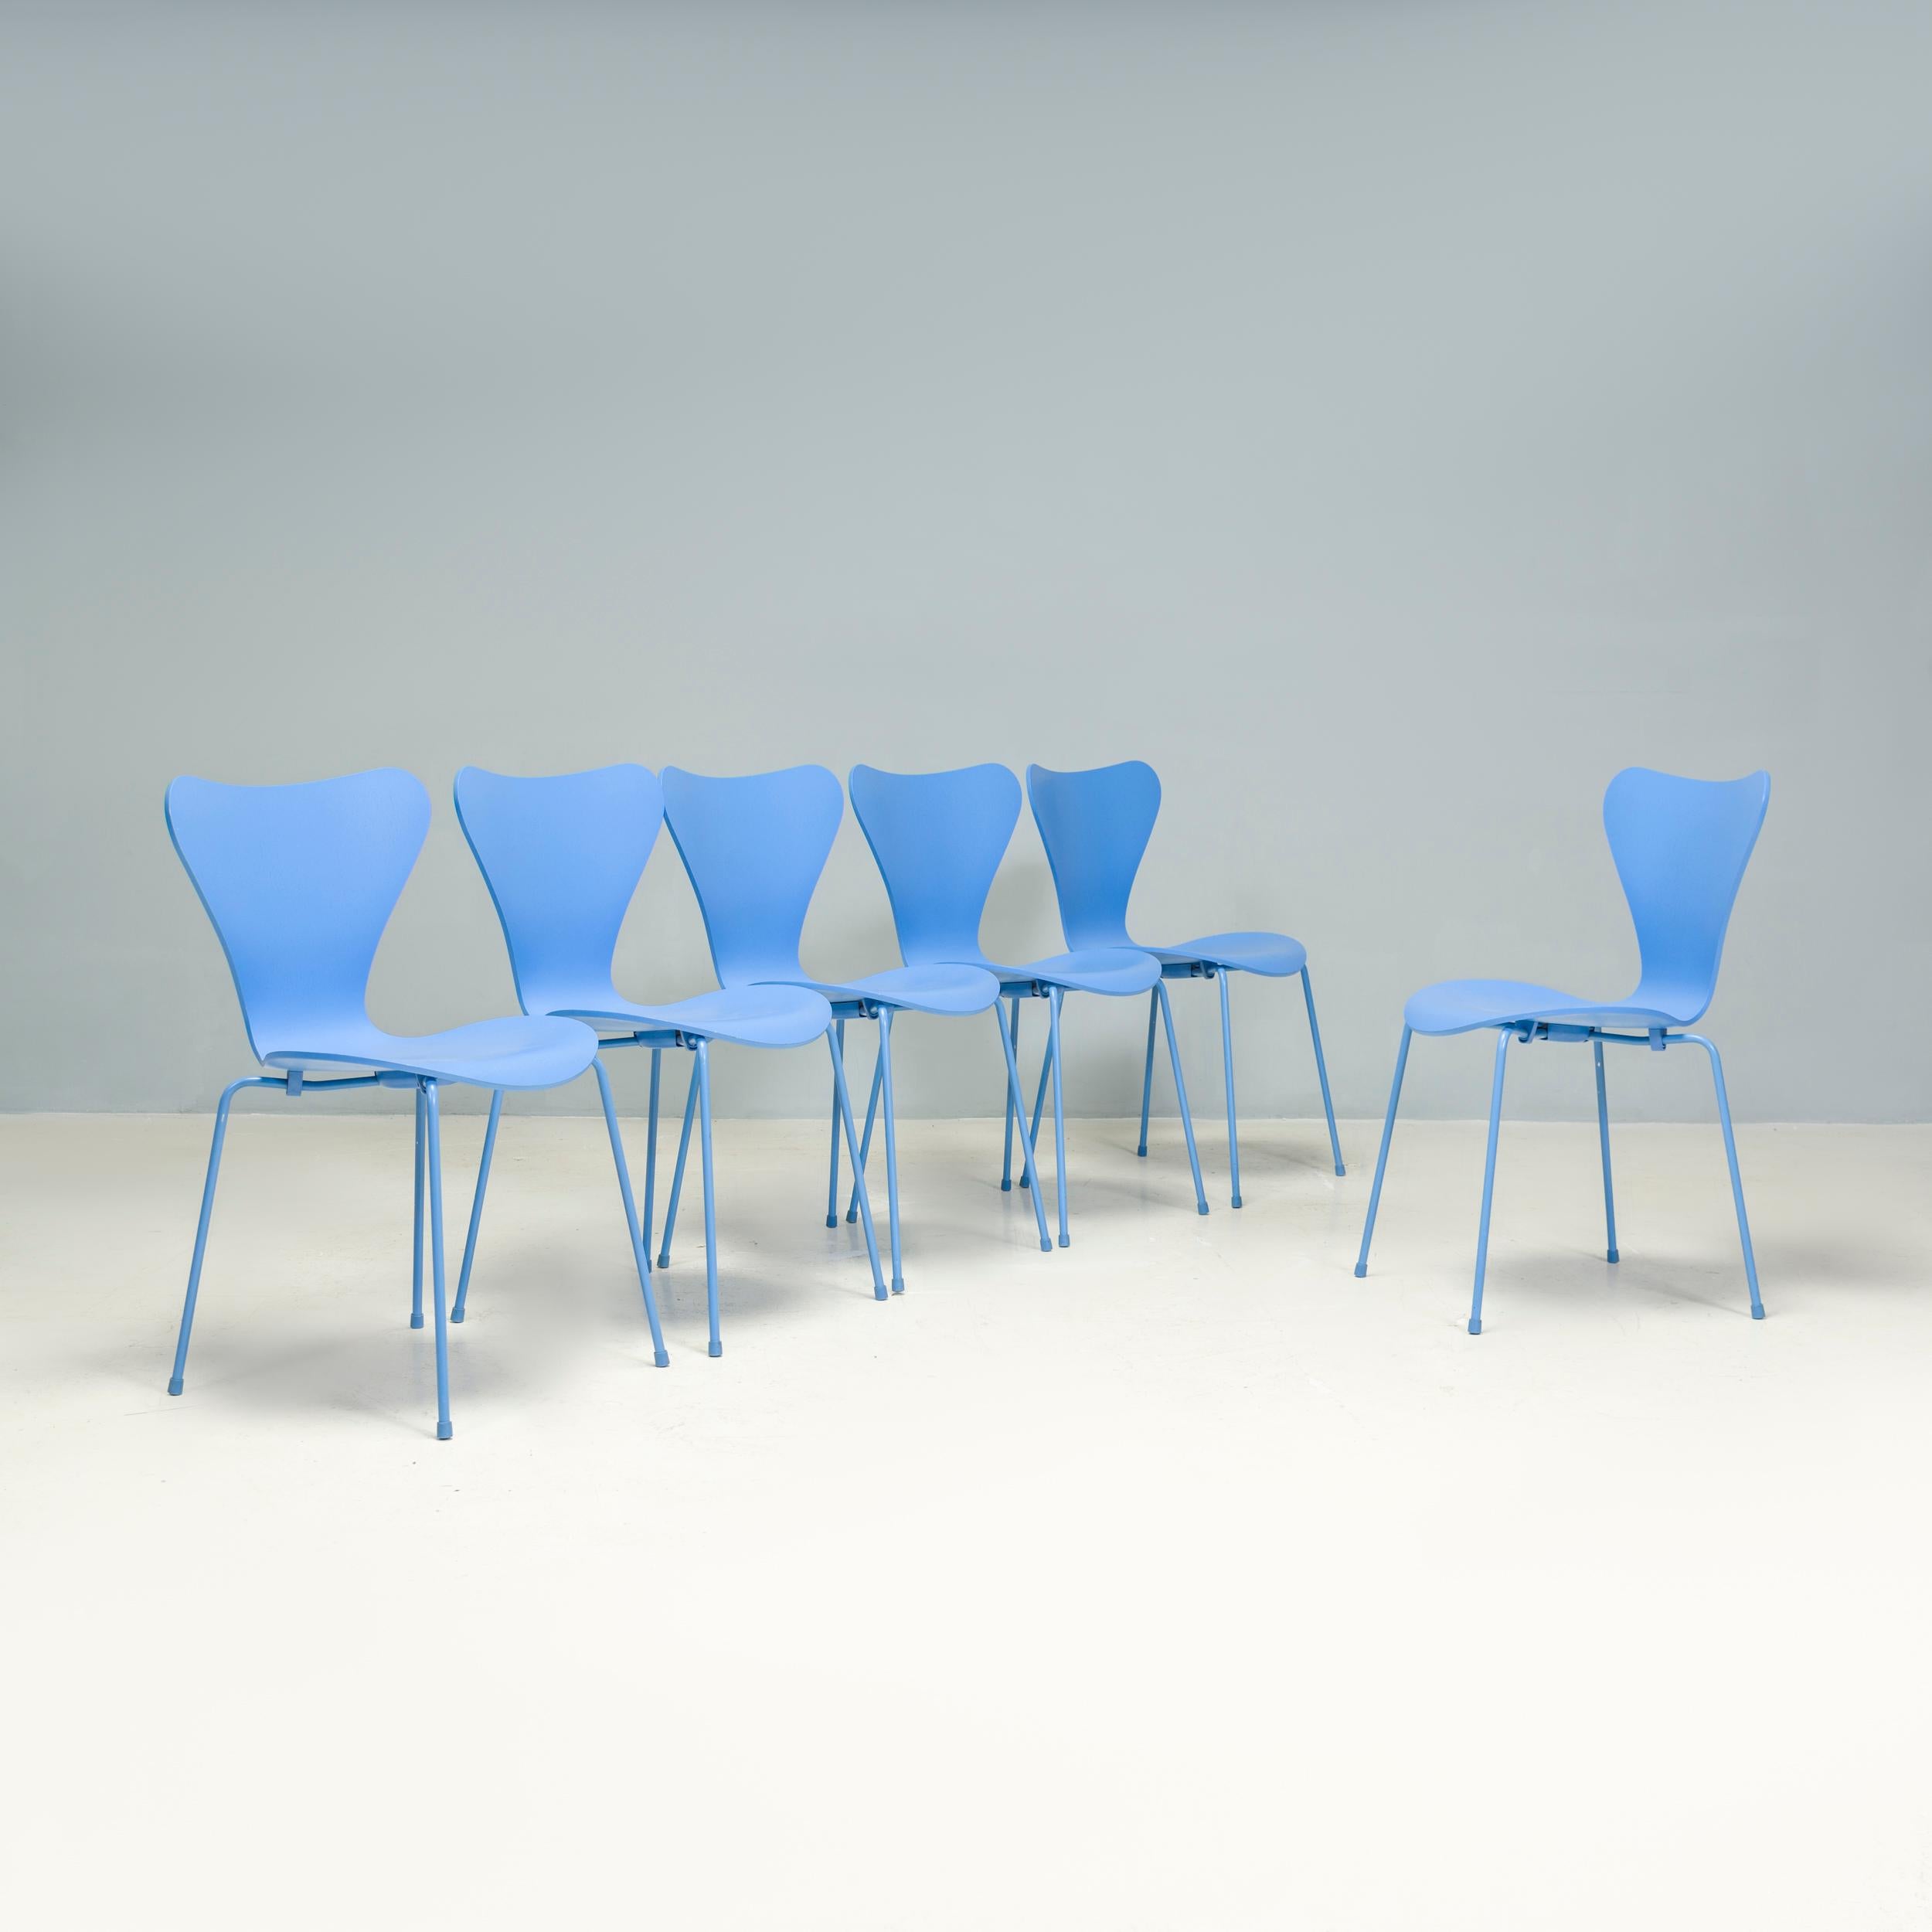 Als echte Design-Ikone ist die Serie 7 zu einem der meistverkauften Stühle der Geschichte geworden. Der ursprünglich von Arne Jacobsen 1955 für die Ausstellung H55 in Schweden entworfene Stuhl der Serie 7 Dining wird seither von Fritz Hansen